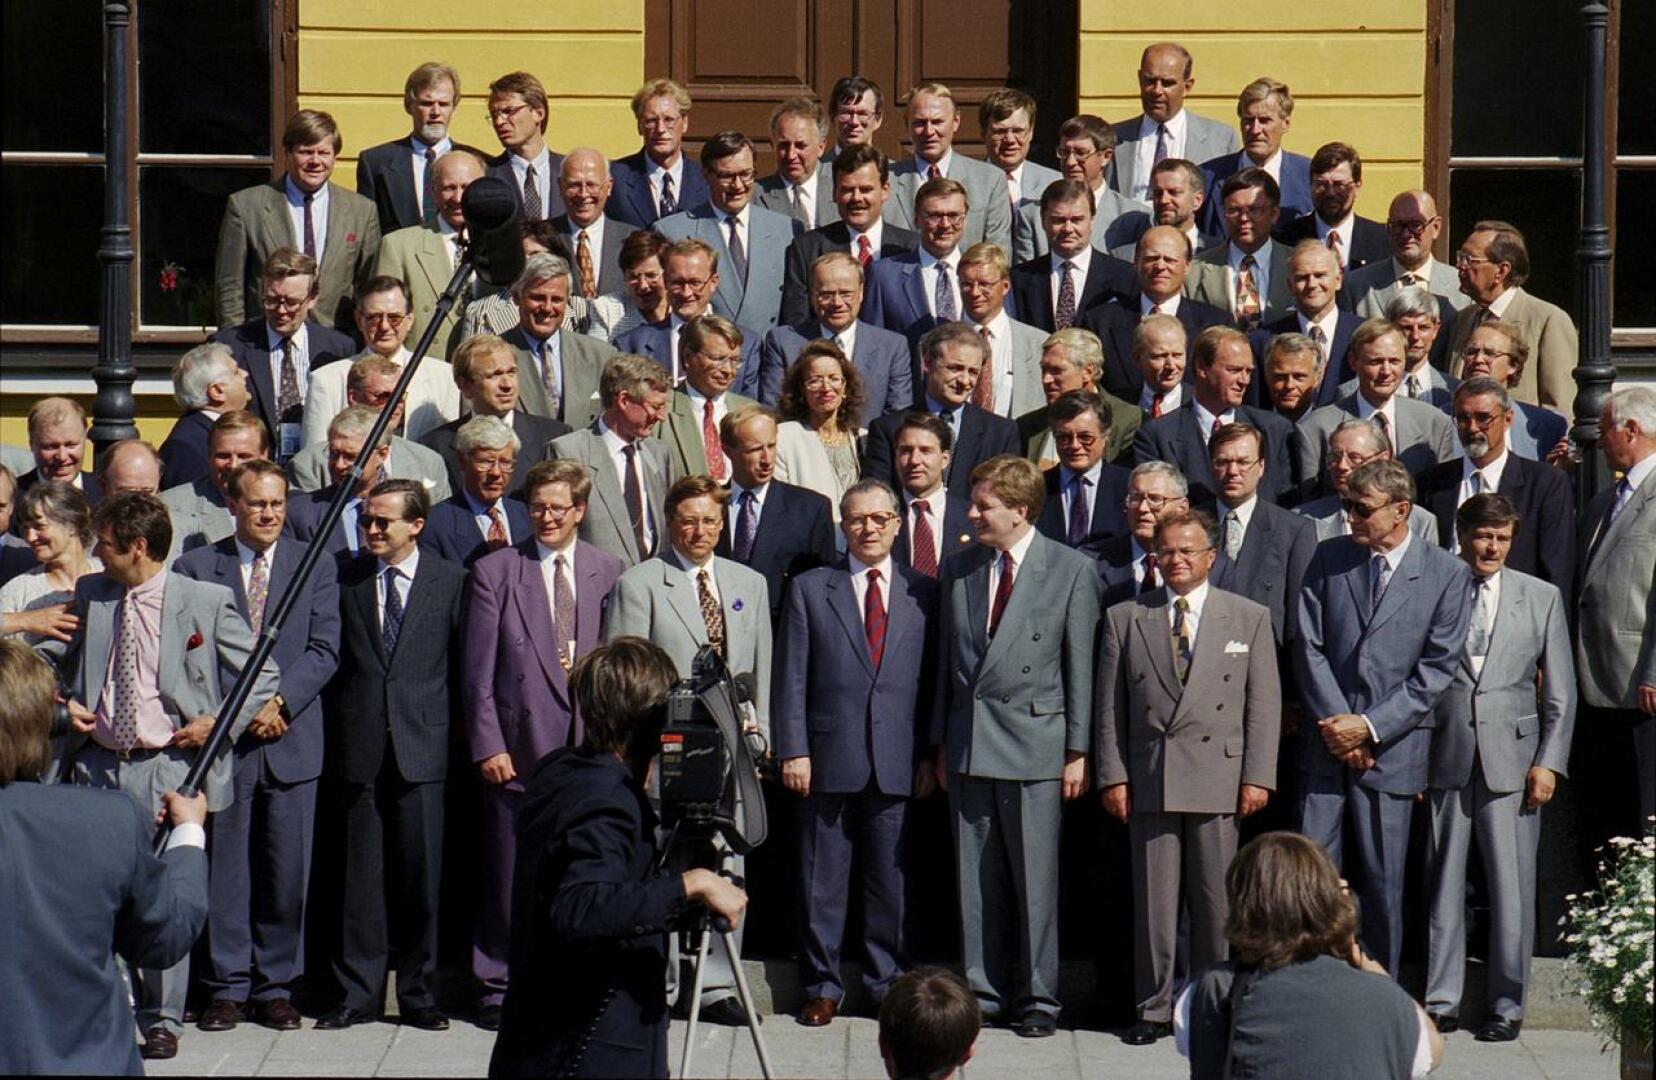 Luokkakuvassa. Arvovaltainen joukko kokoontui Kokkolan raatihuoneen portaille kuumana heinäkuun päivänä vuonna 1994.